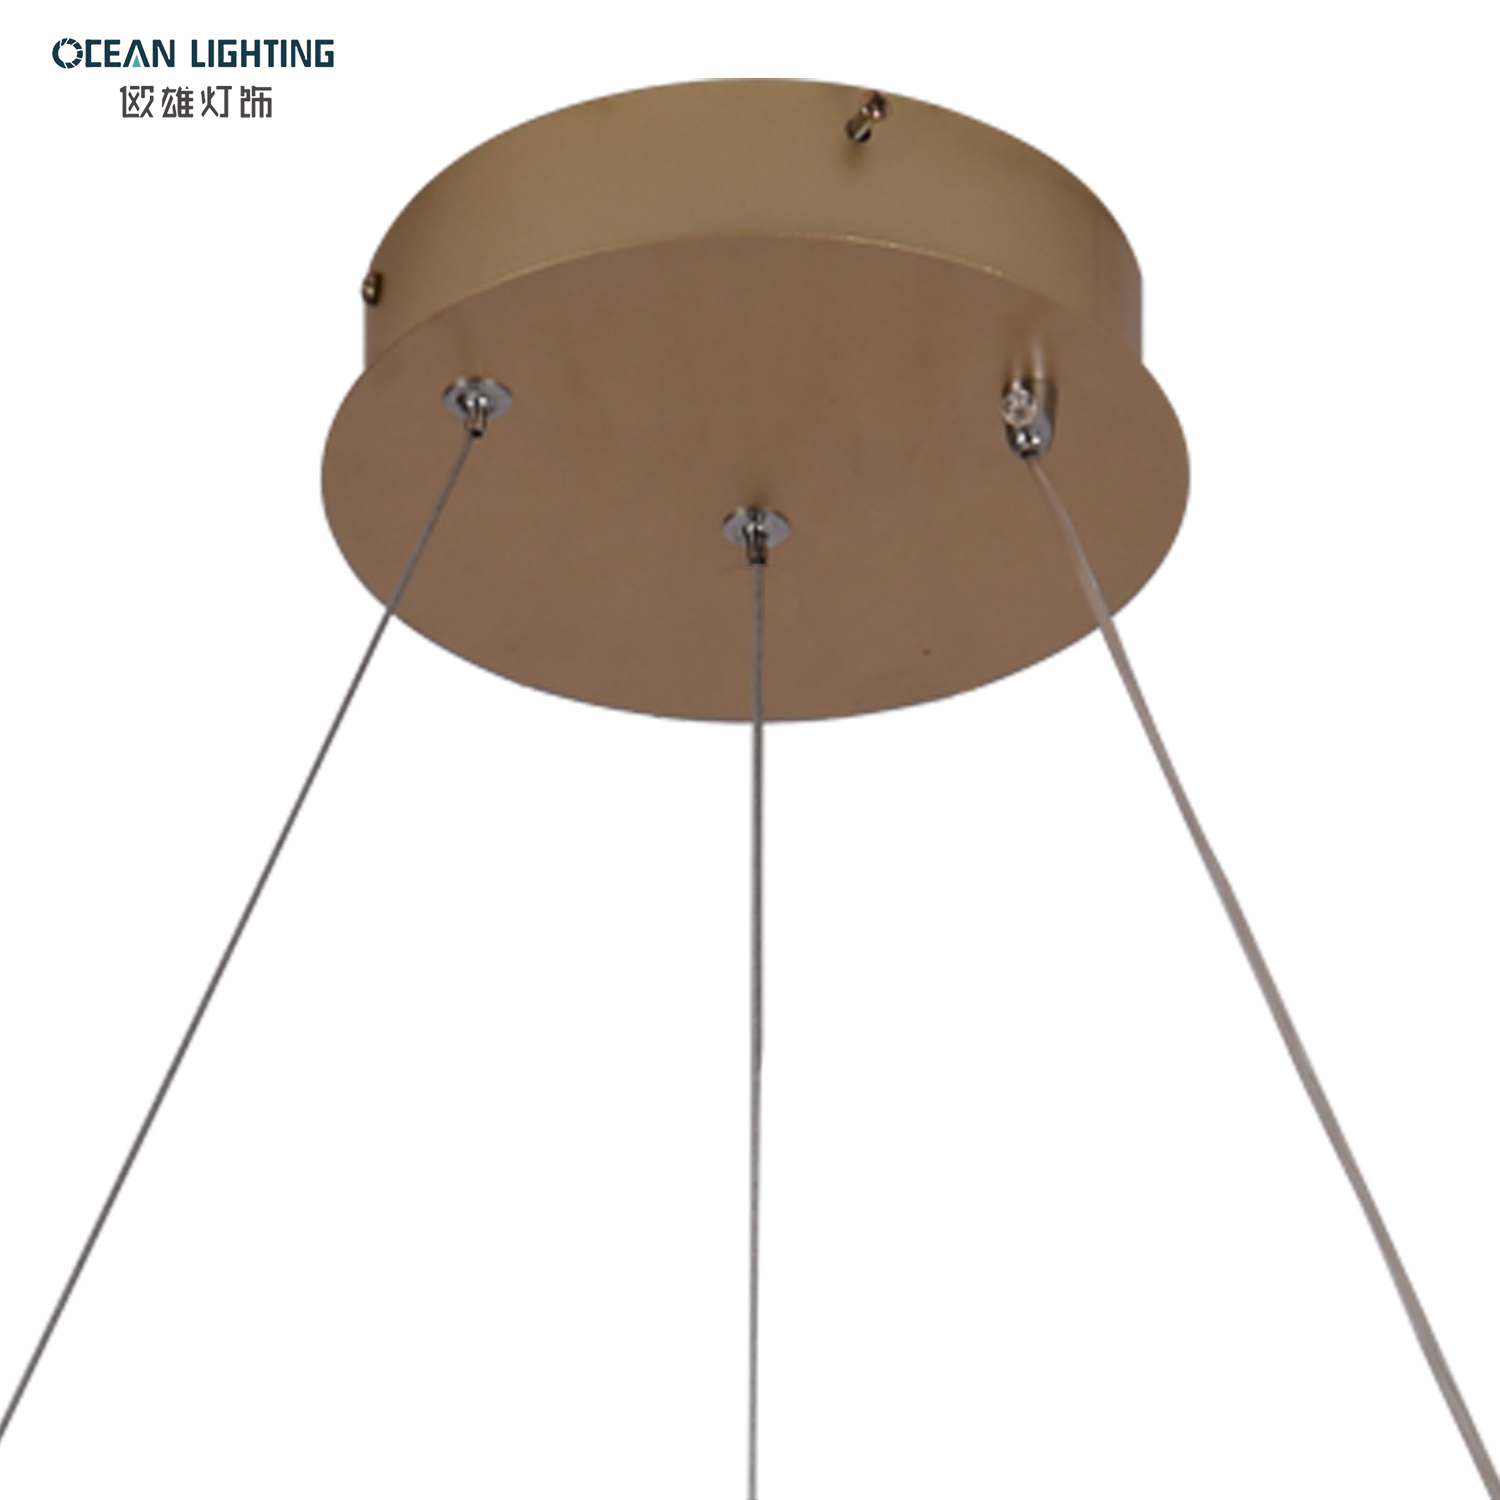 OCEAN LAMP Pendant Light LED Design Simple Modern Decorative Lighting Fixture Ring Chandelier for Hotel